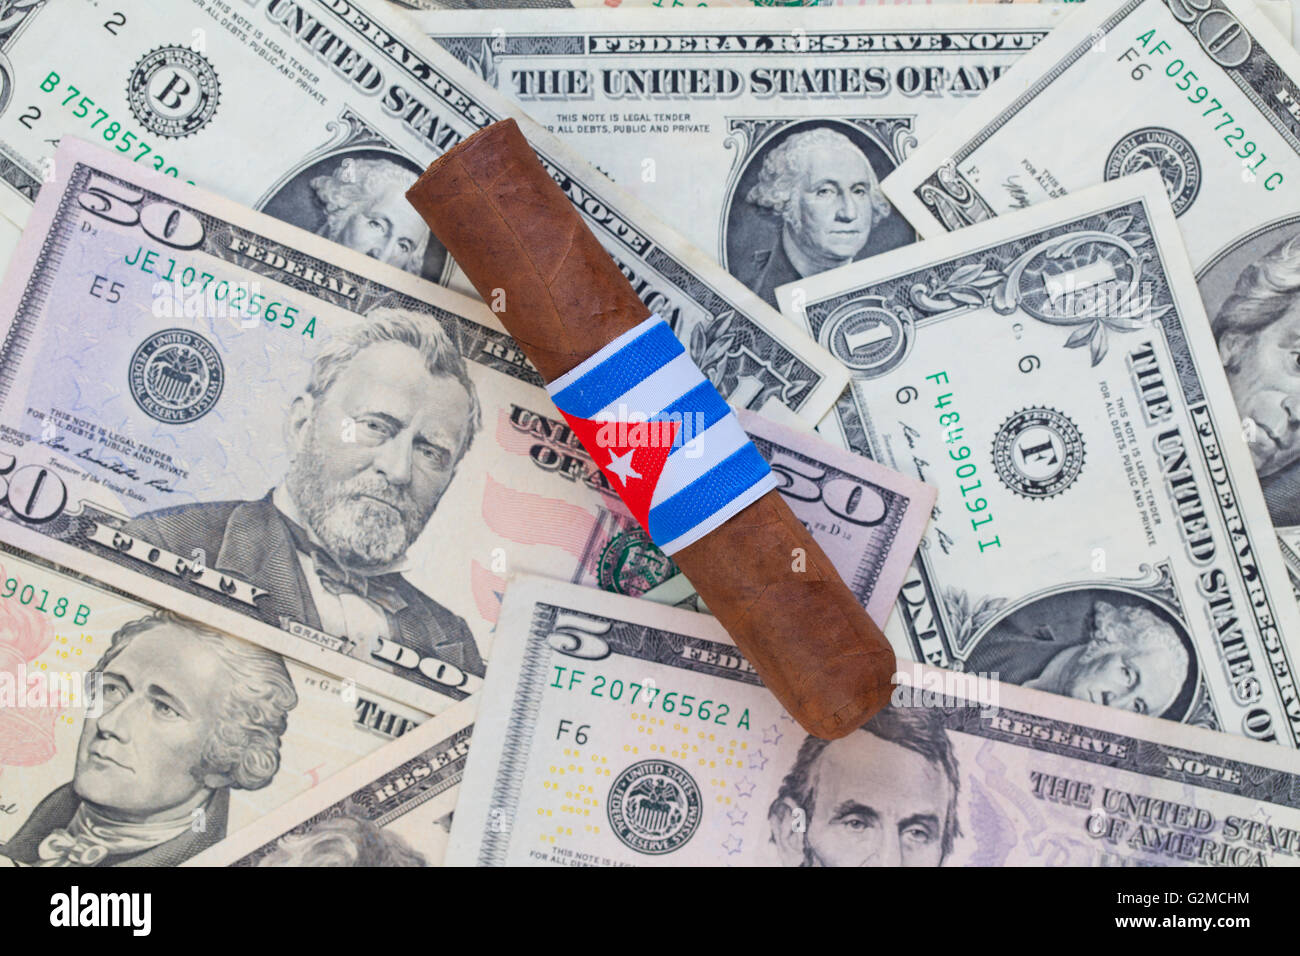 Détail de luxe cigare cubain sur le dollar US banknotes Banque D'Images